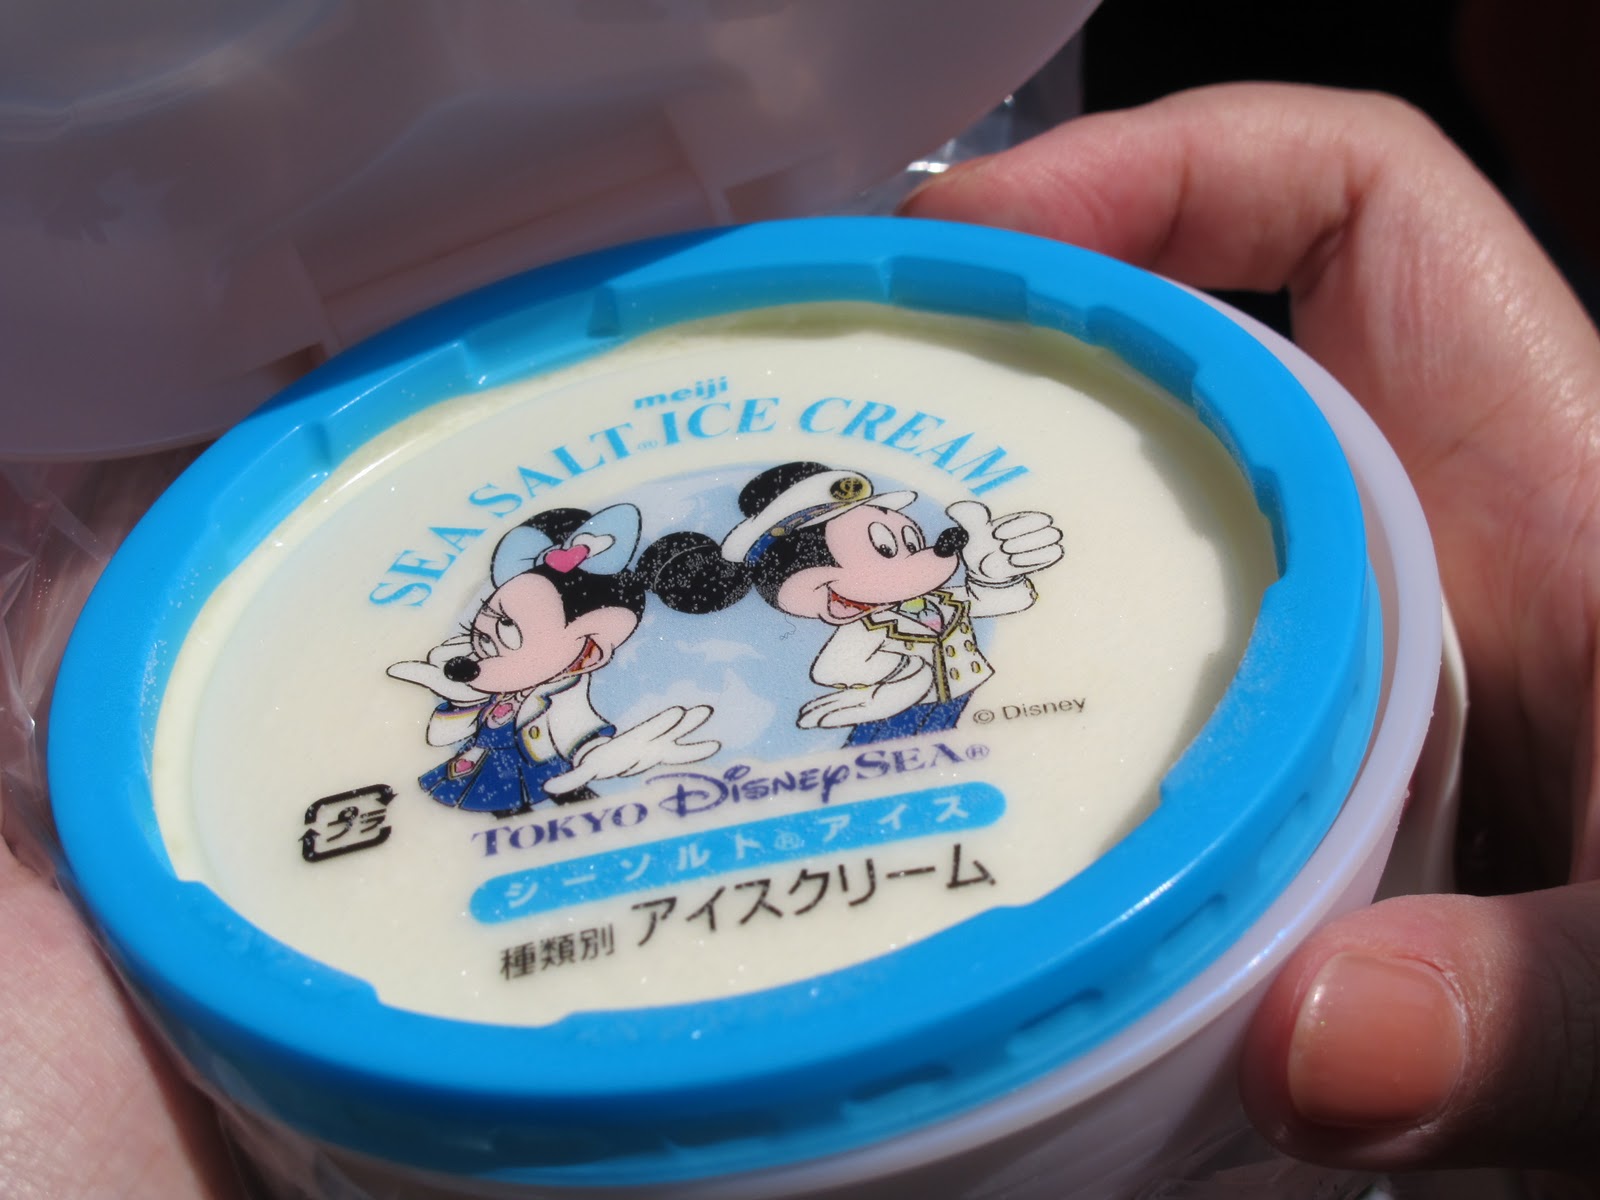 Sea-salt ice cream | Disney Wiki | FANDOM powered by Wikia